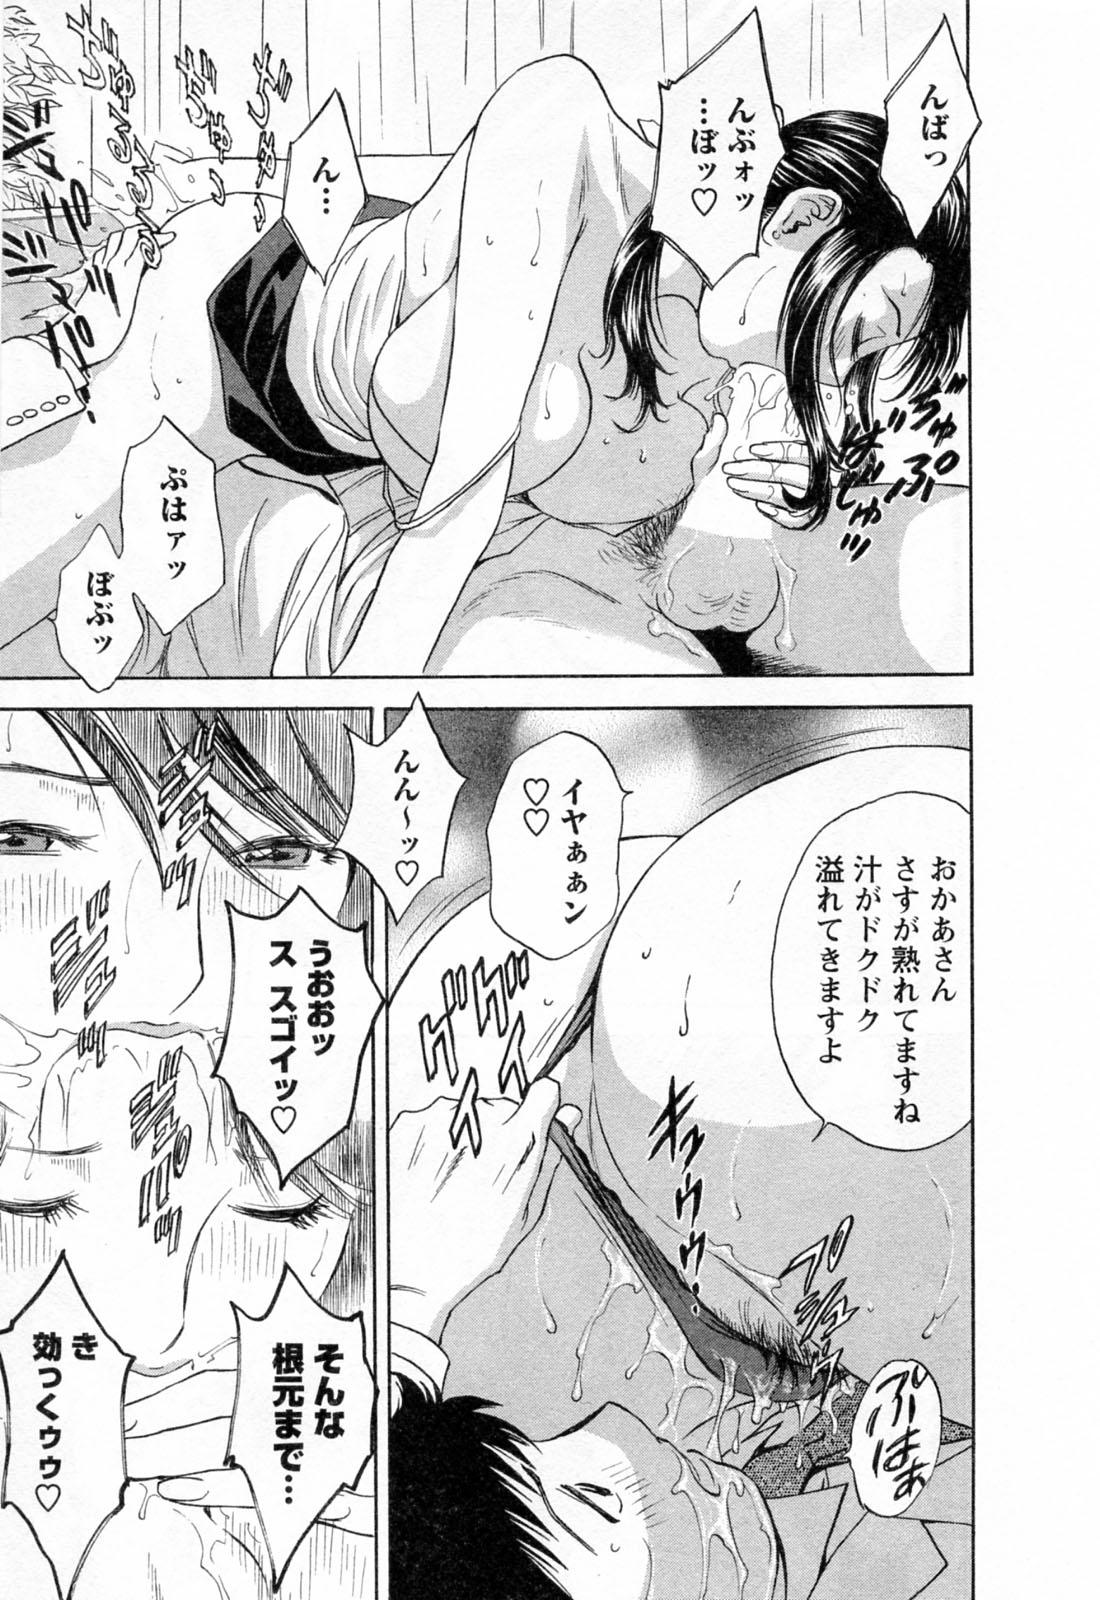 [Hidemaru] Mo-Retsu! Boin Sensei (Boing Boing Teacher) Vol.4 66